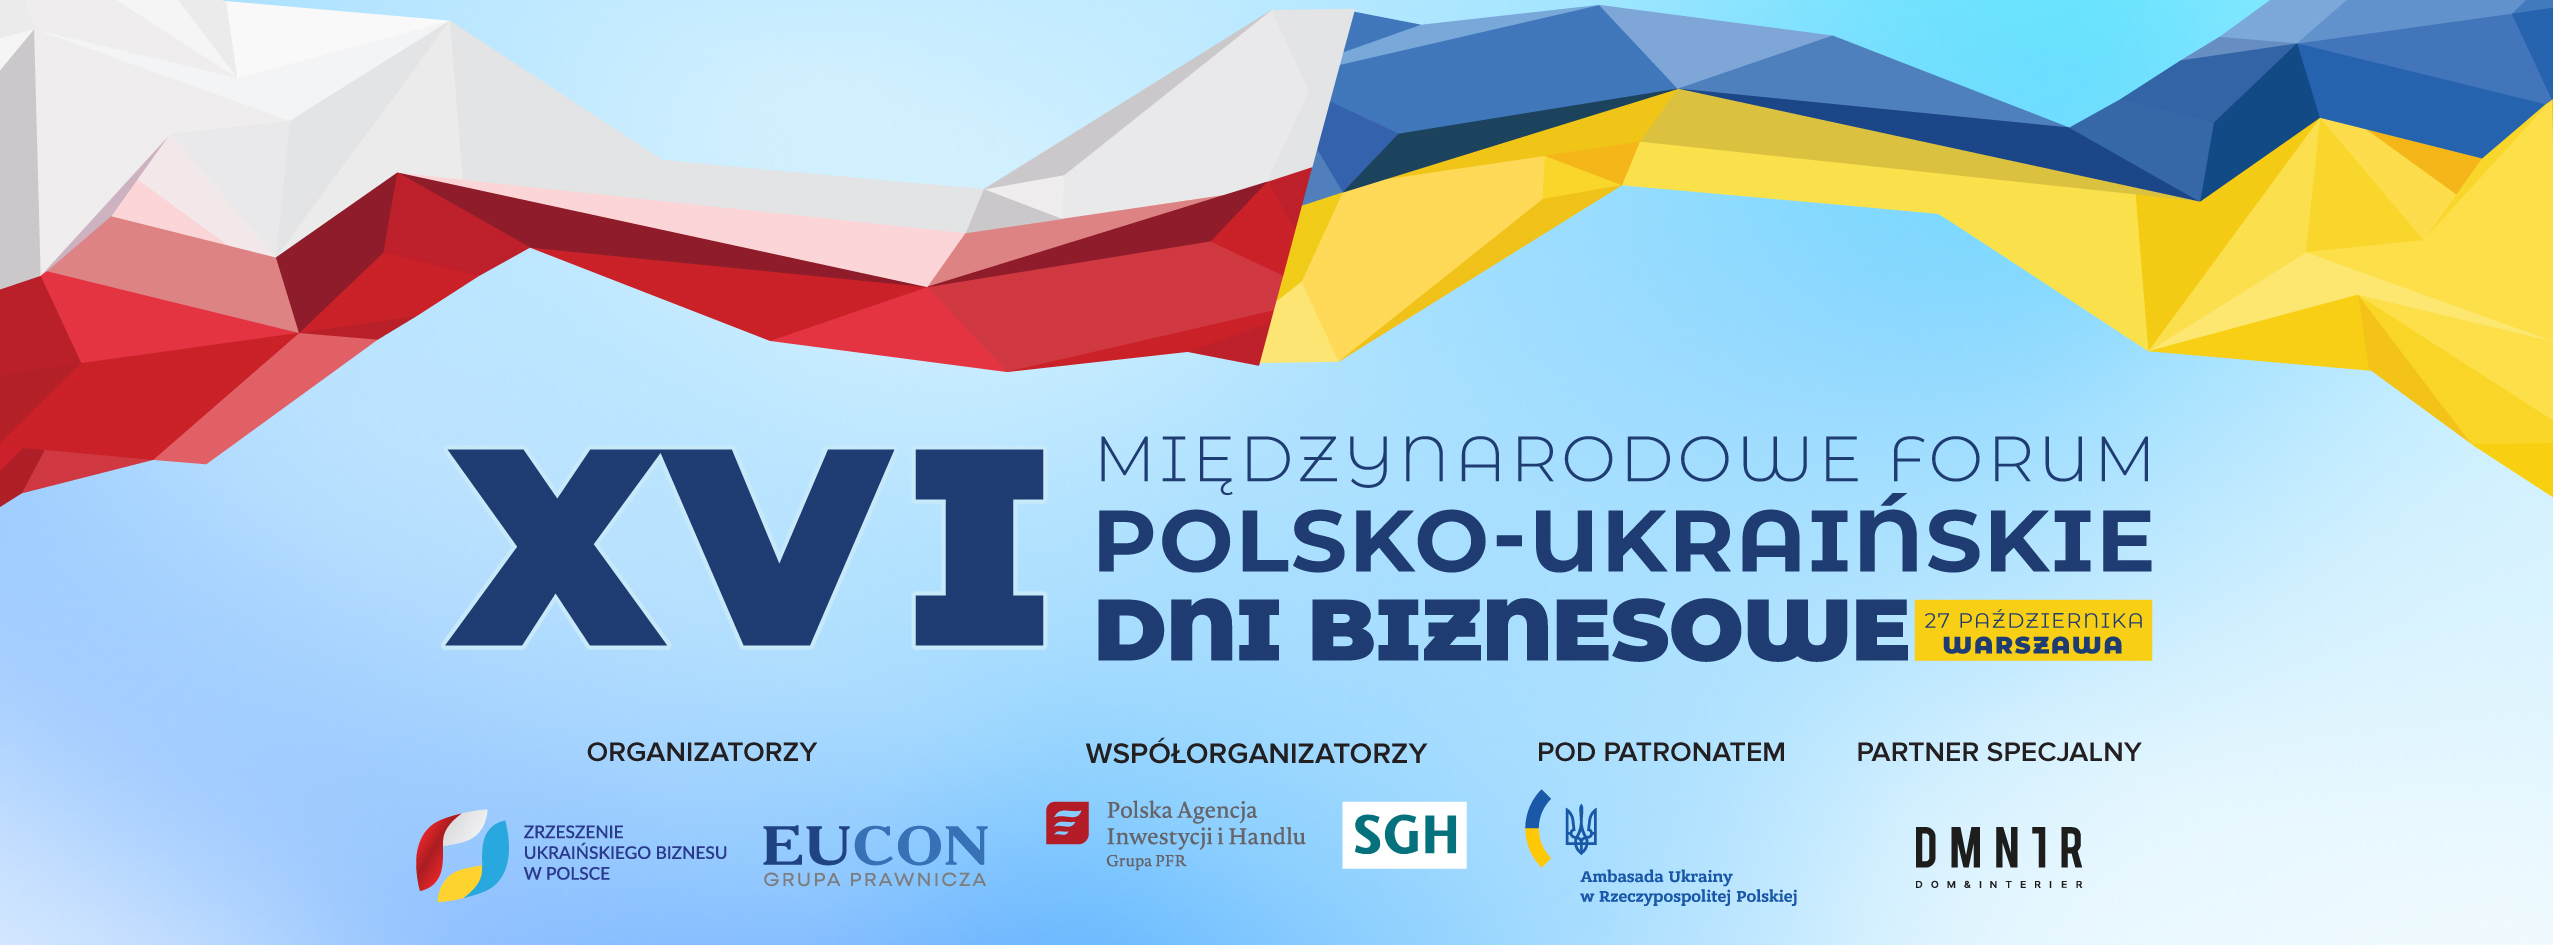 XVI Międzynarodowe Forum „Polsko-Ukraińskie dni biznesowe”